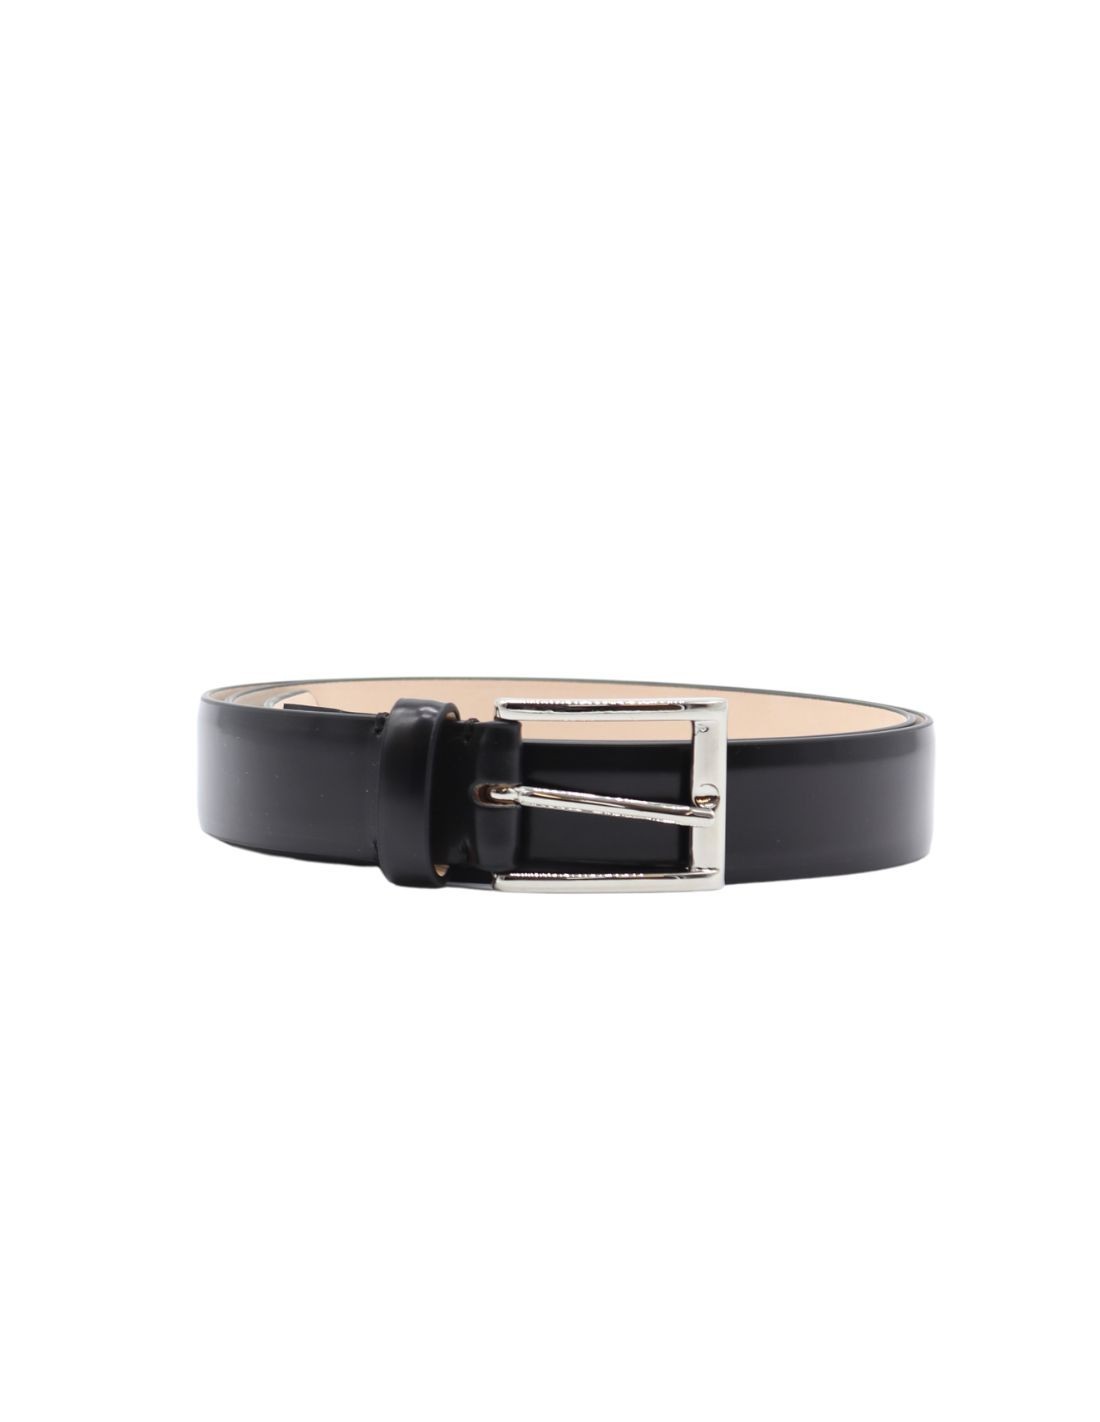 Black glazed leather belt MAISON MARGIELA - FW22